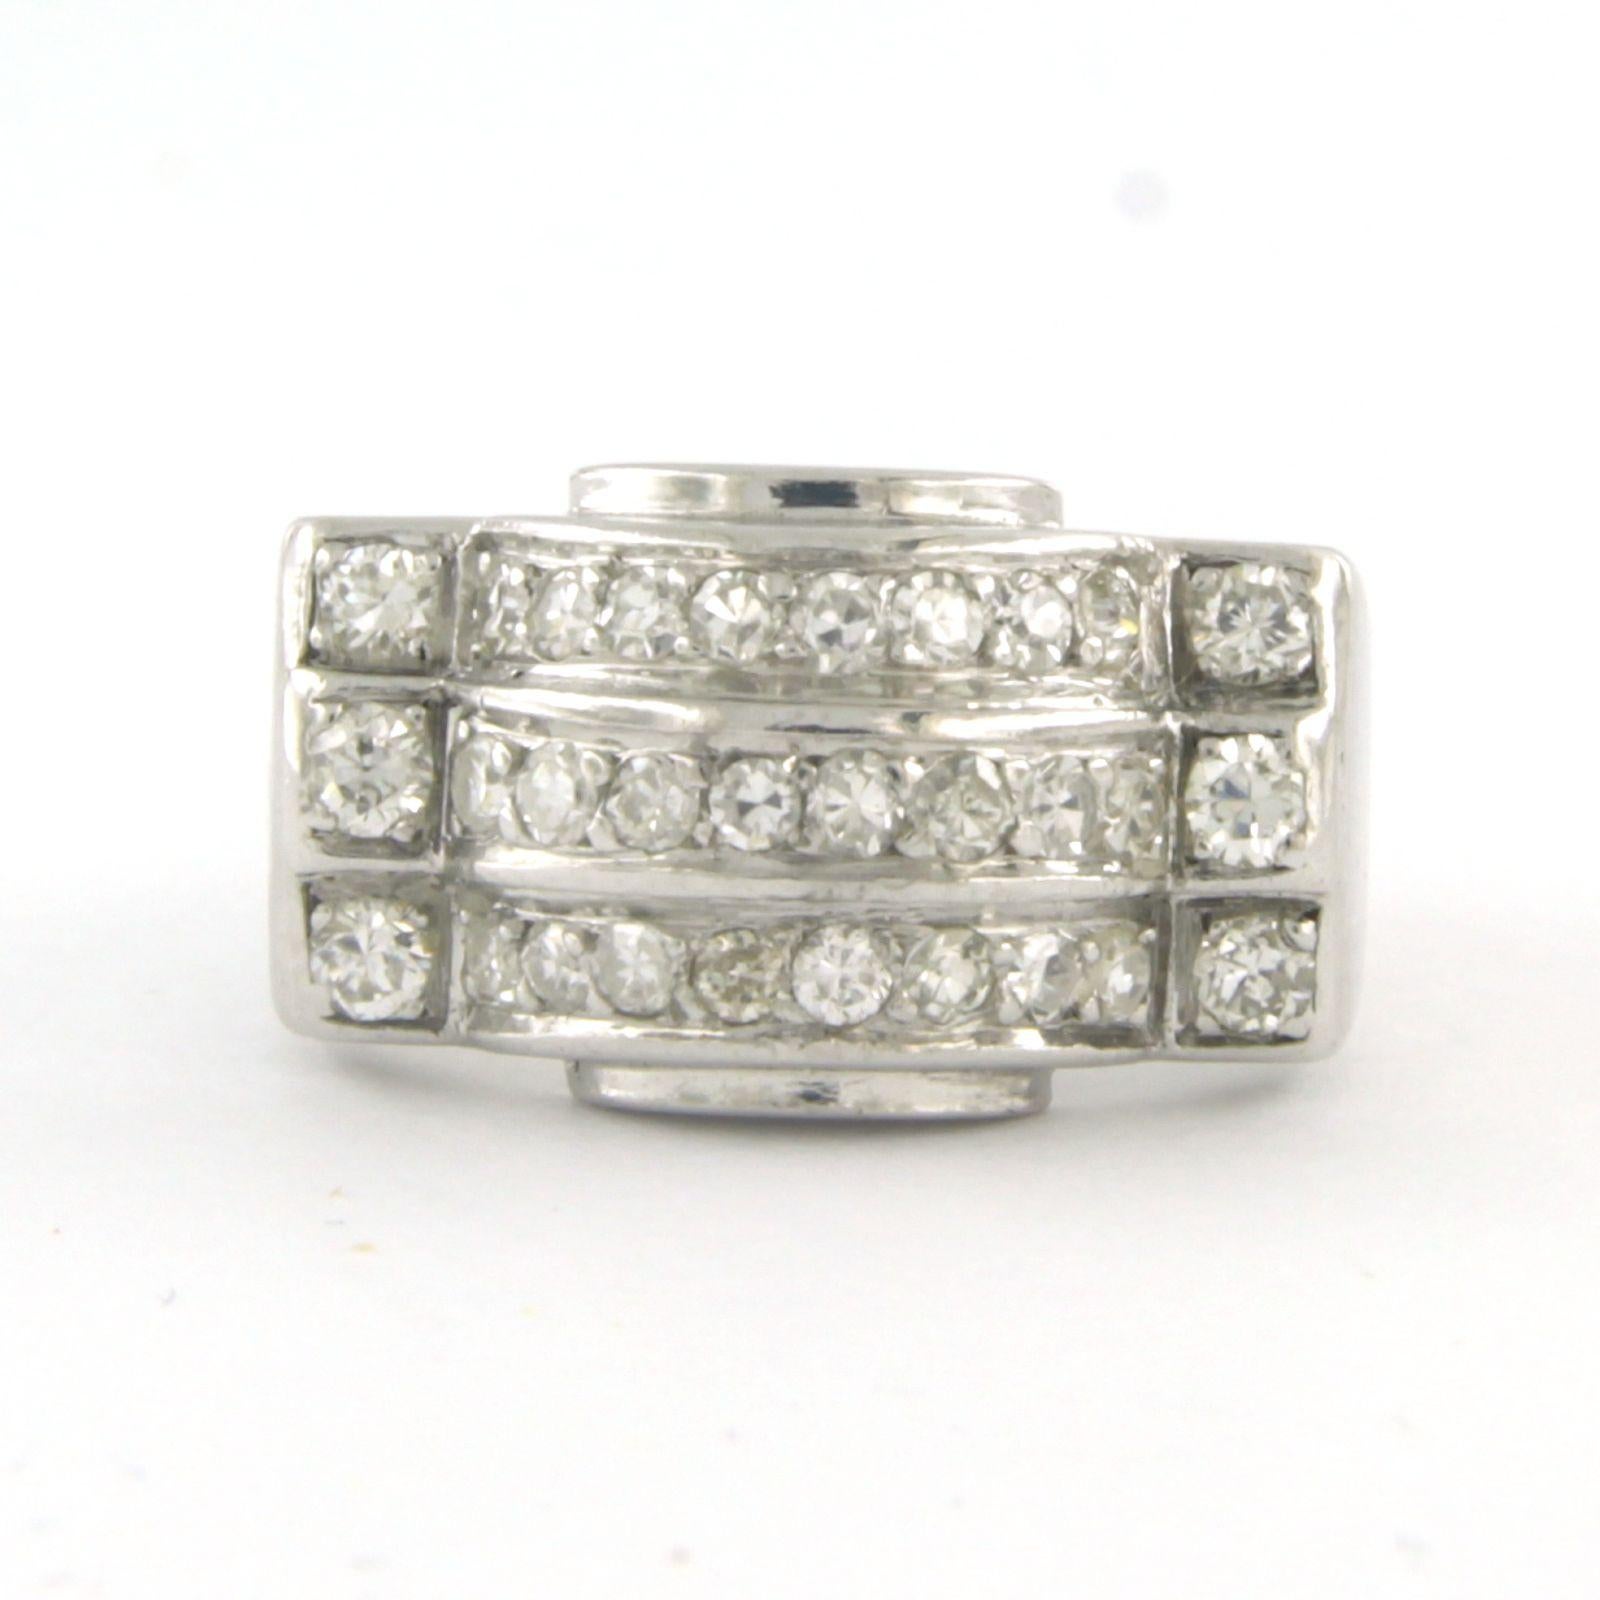 Platinring, besetzt mit Diamanten im Einzelschliff. 0,80ct - F/G - VS/SI - Ringgröße U.S. 5 - 15.75(49)

detaillierte Beschreibung:

Die Oberseite des Rings ist 1,0 cm breit und 5,2 mm hoch.

Ringgröße US 5 - 15.75(49), Ringe können zum